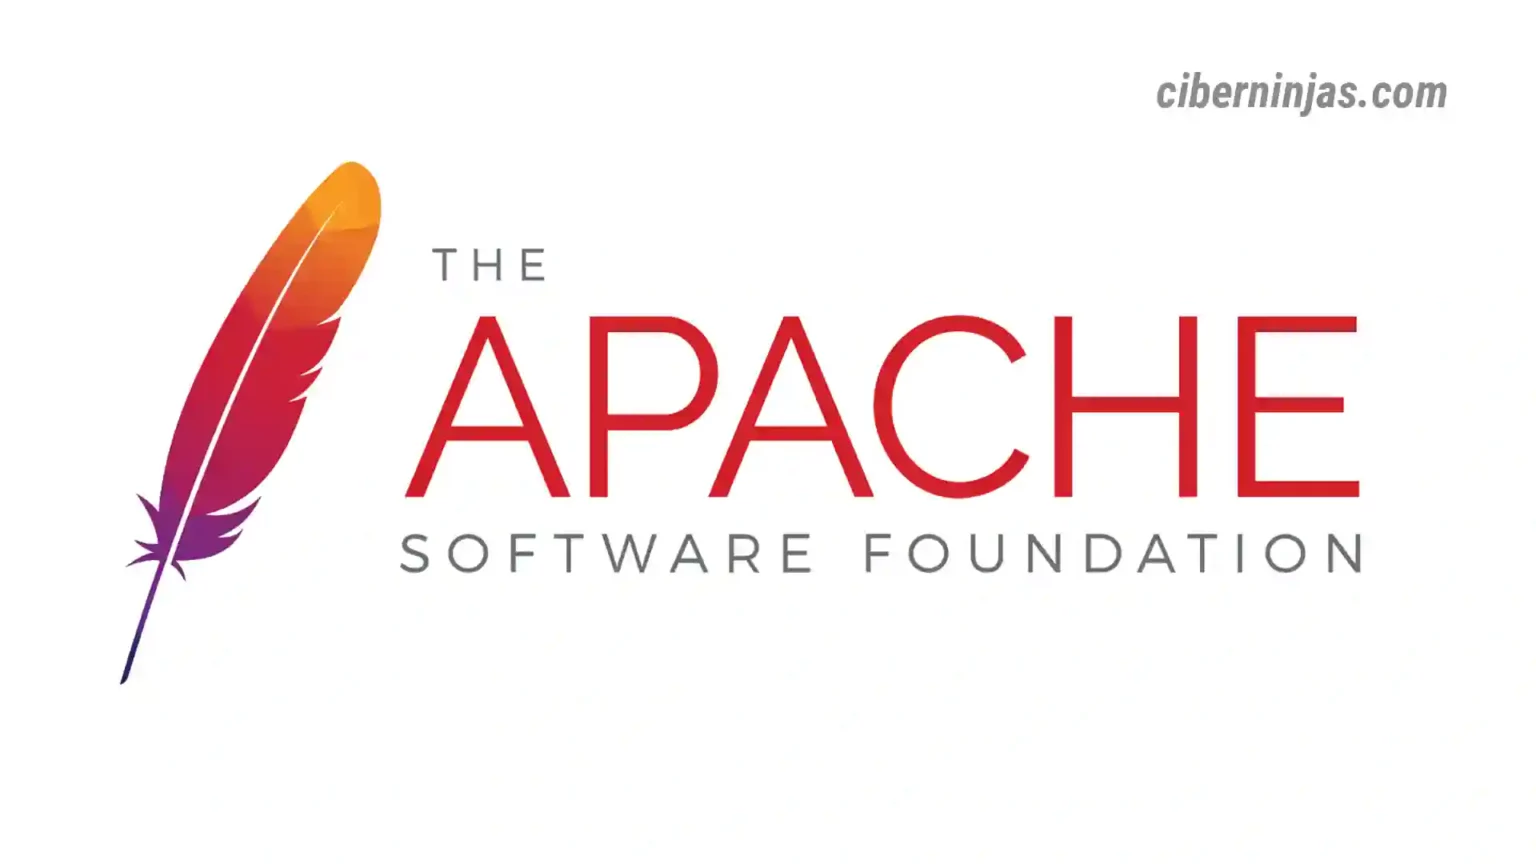 ¿Qué es la fundación Apache?